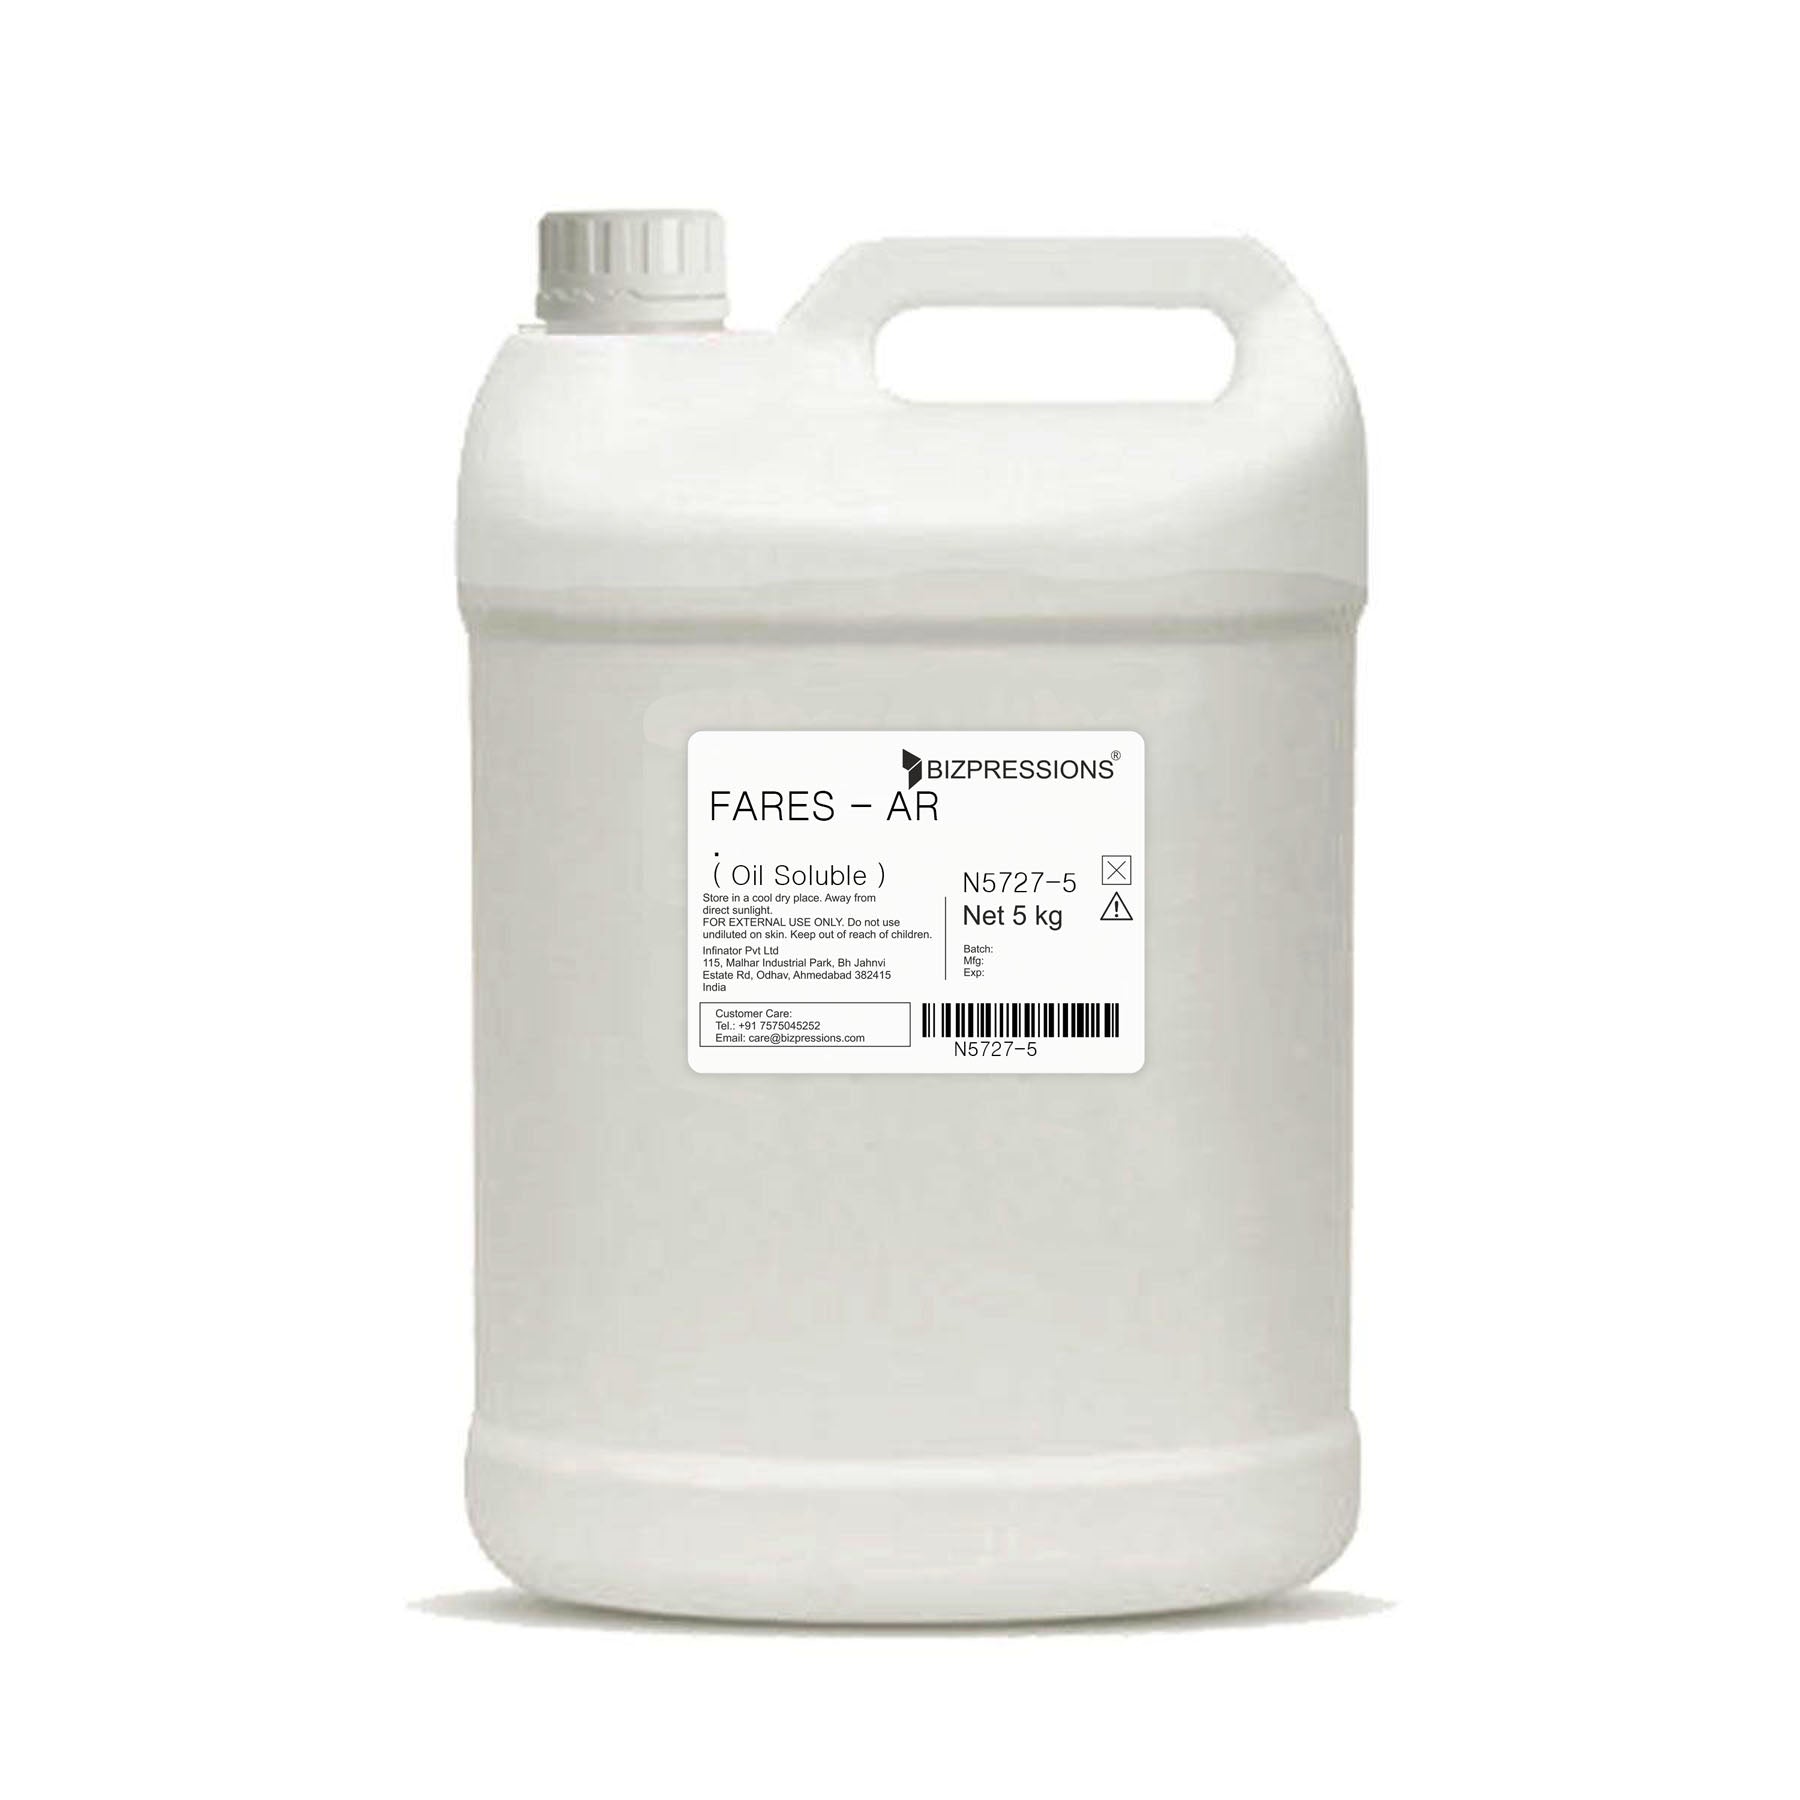 FARES - AR - Fragrance ( Oil Soluble ) - 5 kg